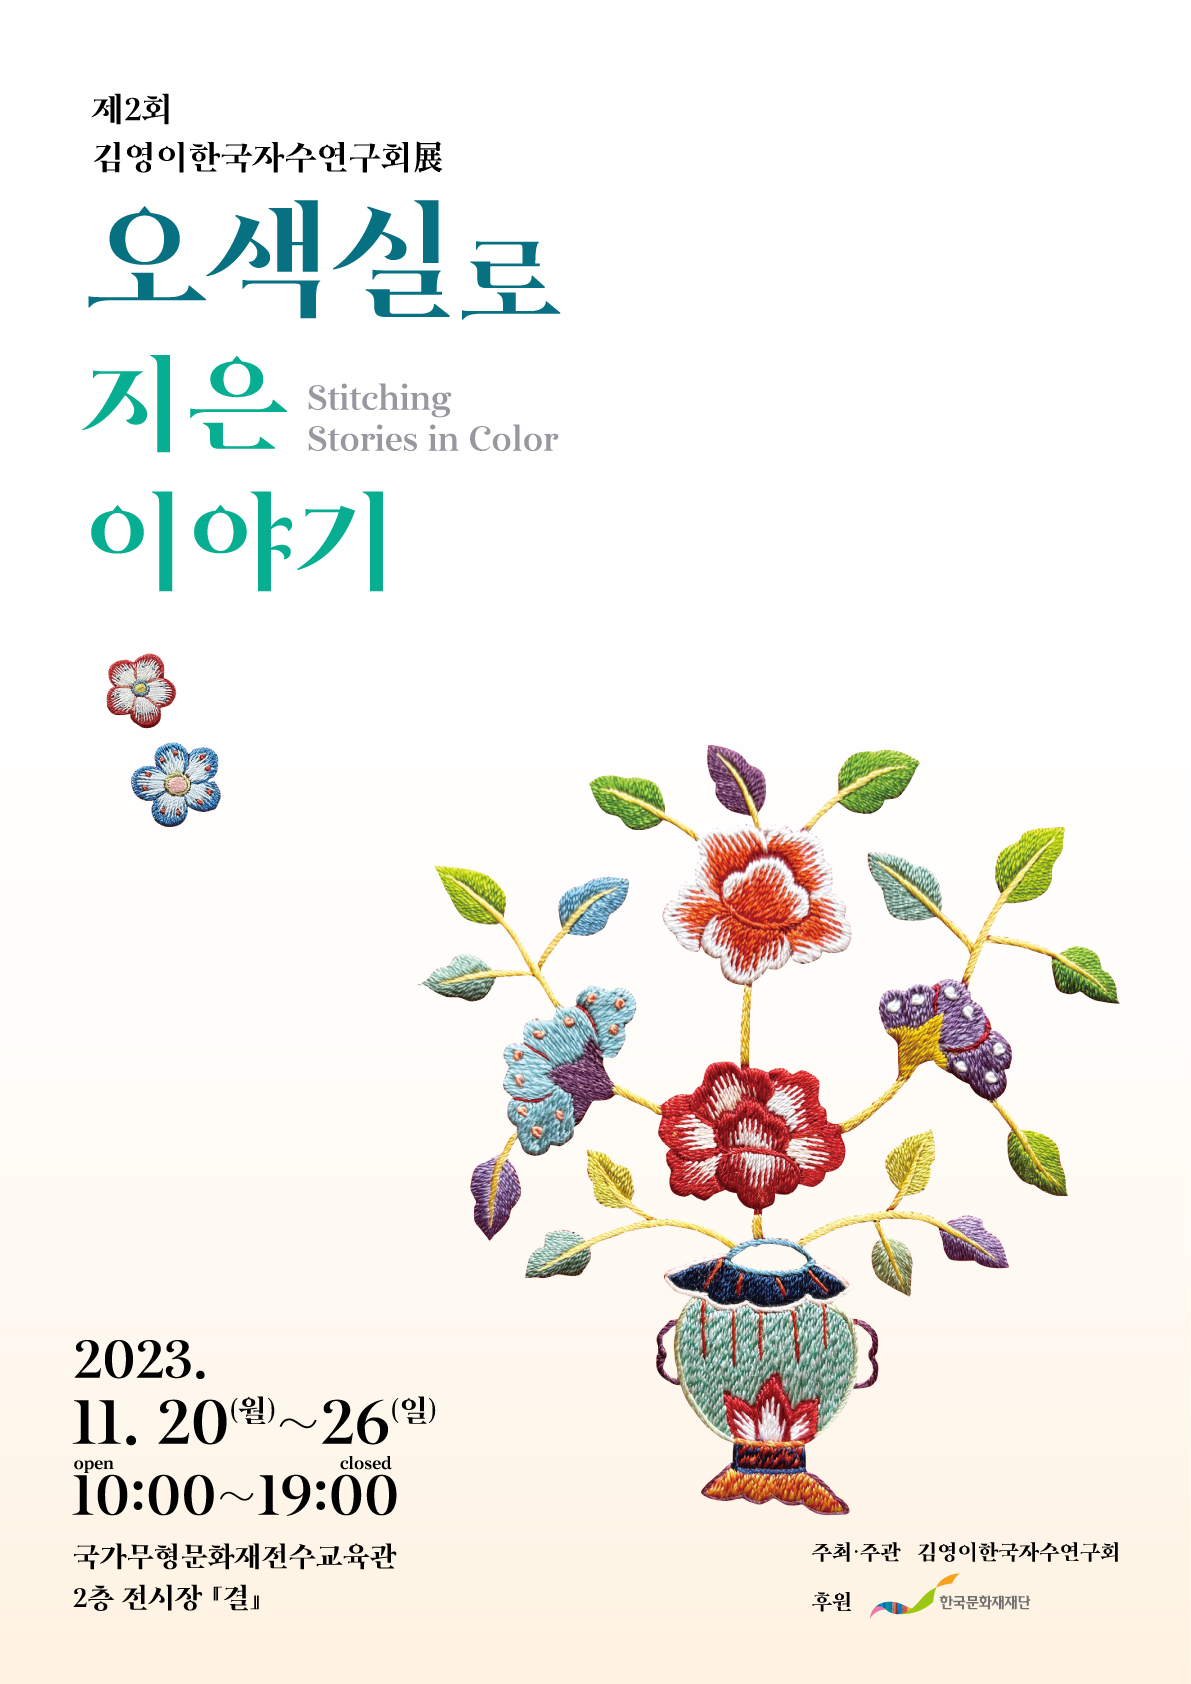 [대관전시] 제2회 김영이한국자수연구회展 &amp;lt;오색실로 지은 이야기&amp;gt; 포스터